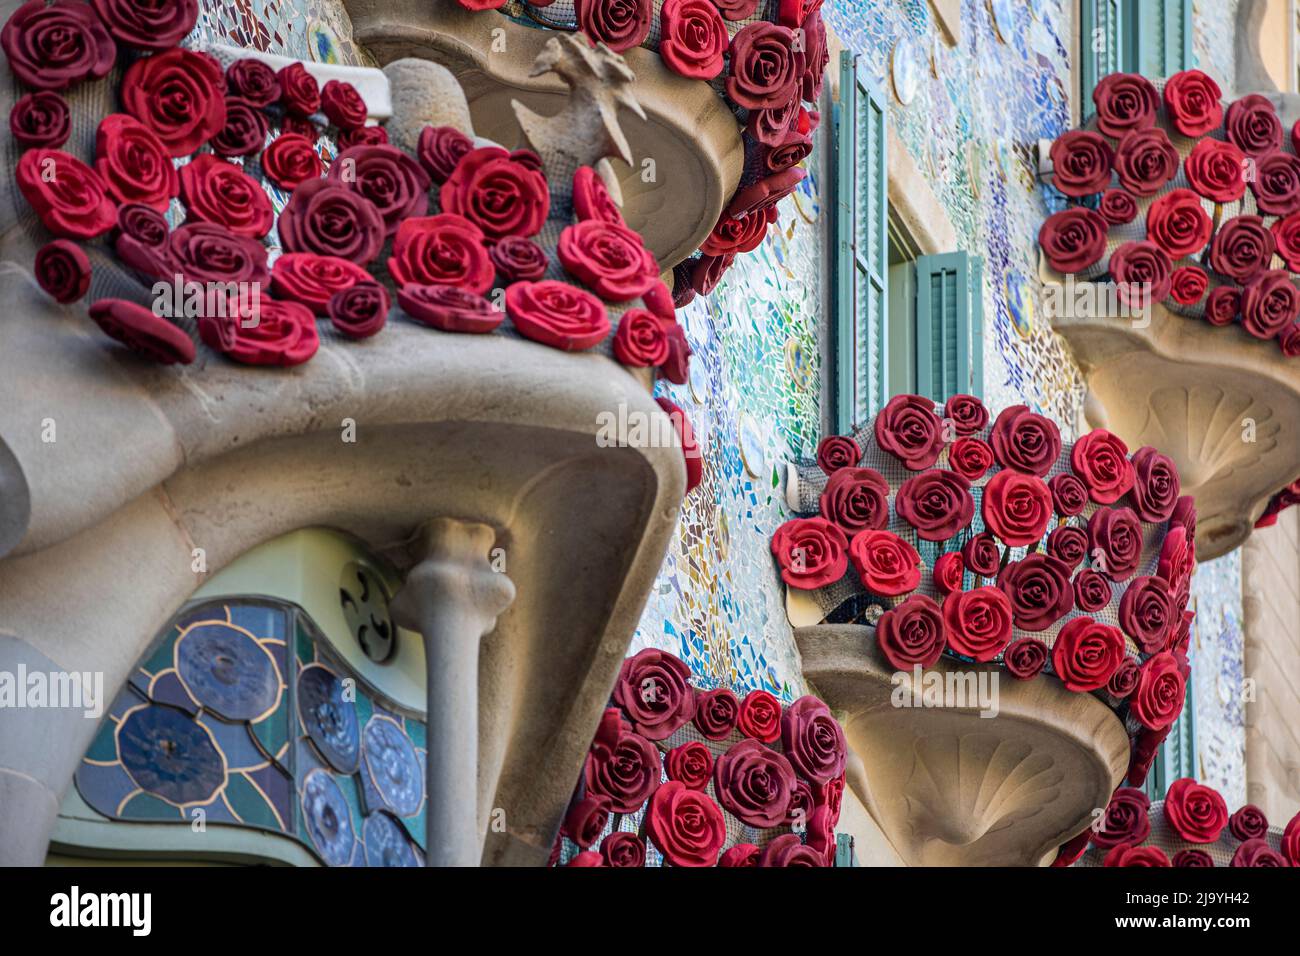 Antoni Gaudi's architecture featured at Casa Batllo in Barcelona Stock Photo